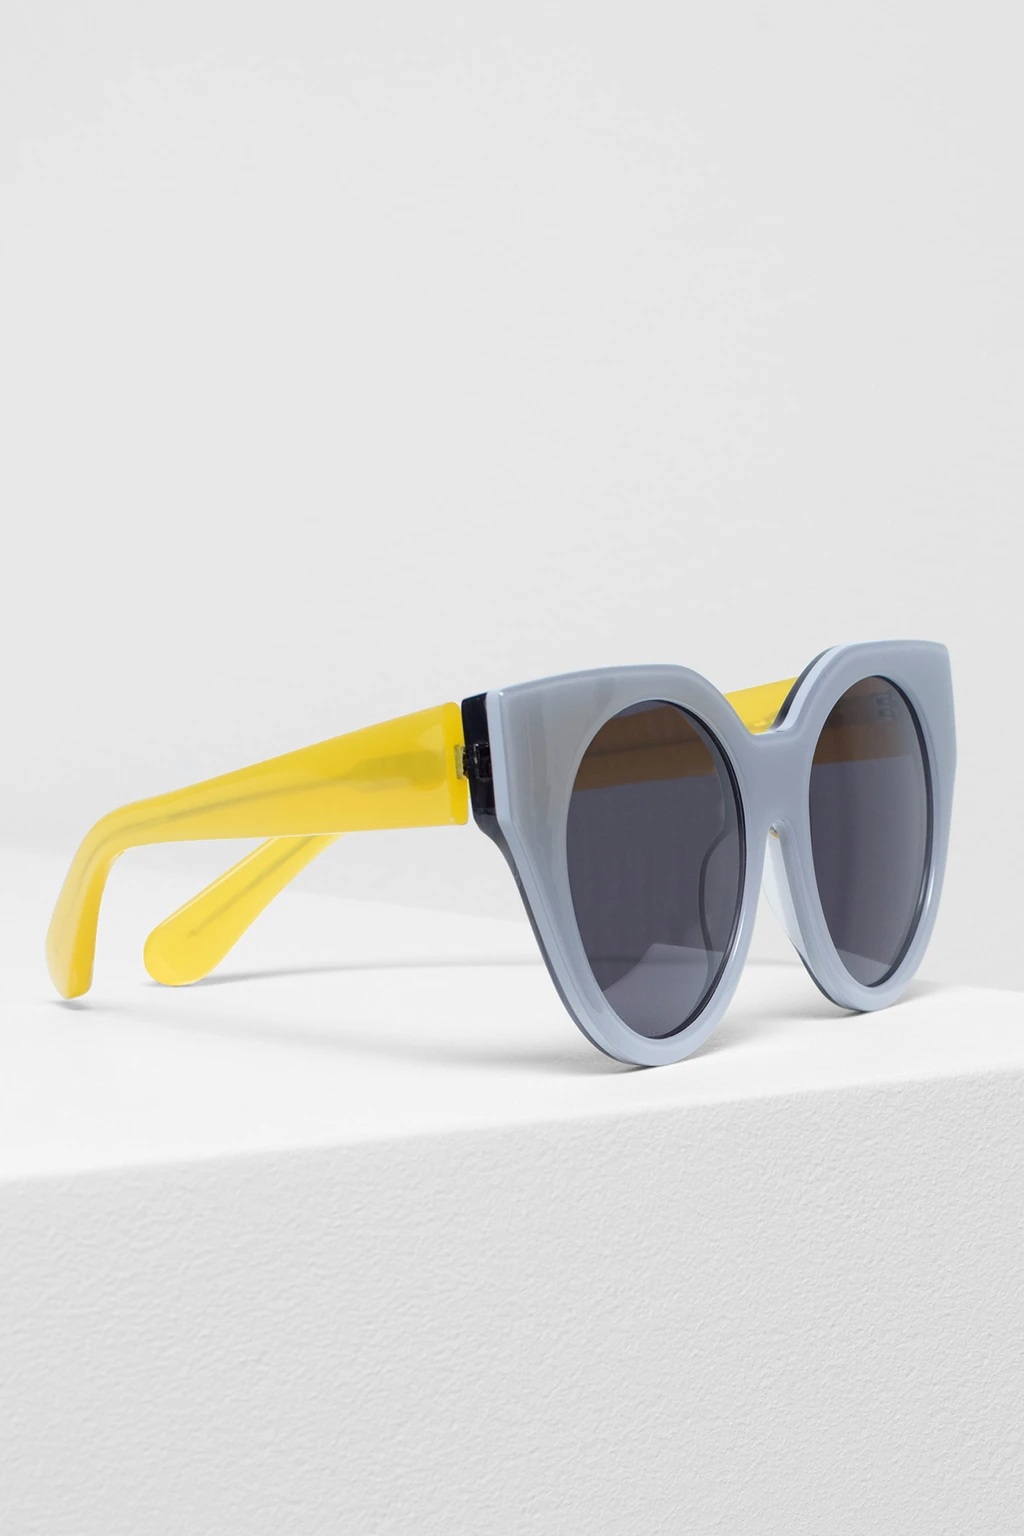 Elk Naema Sunglasses - Smoke/Yellow